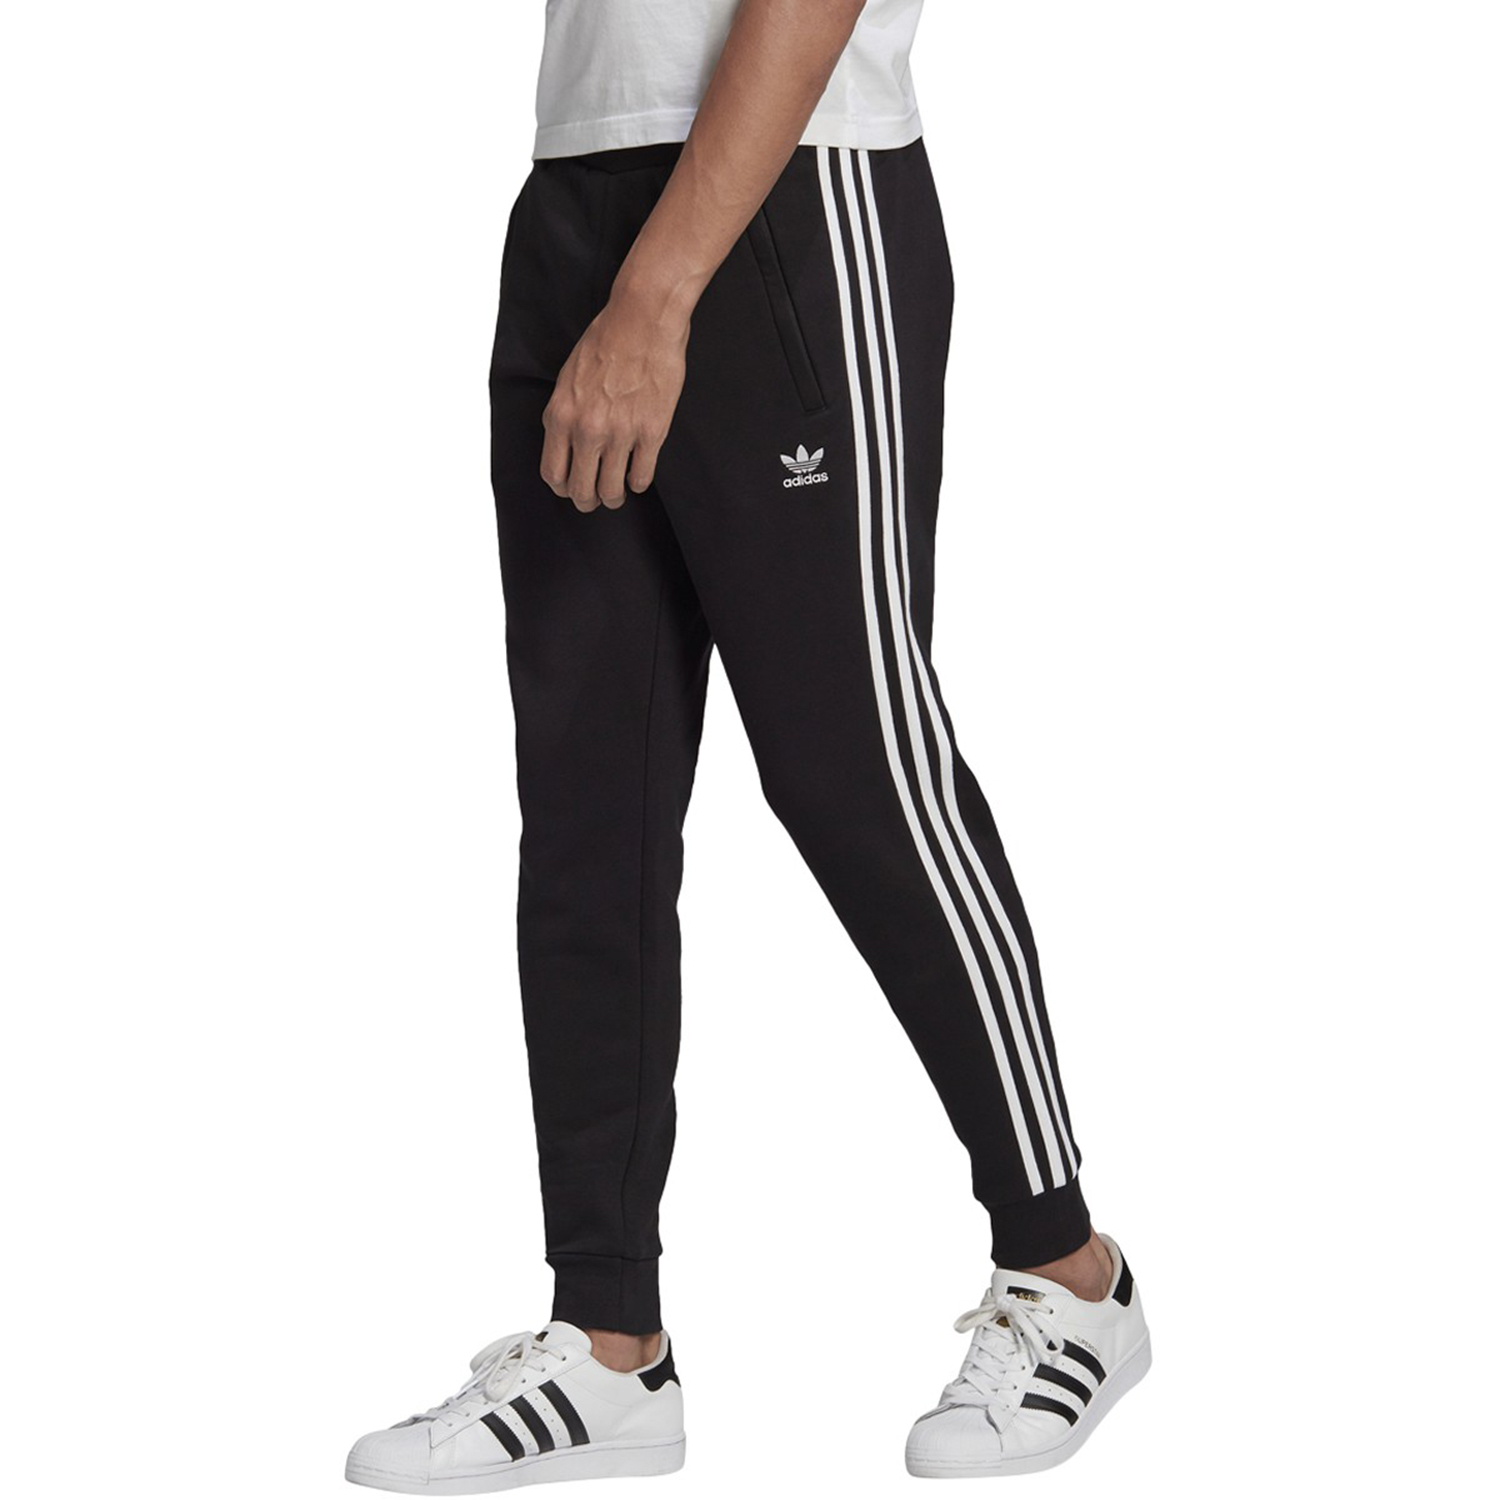 Adidas Adicolor Classics 3-Stripes Men's Pants Black-White gn3458 (Size M)